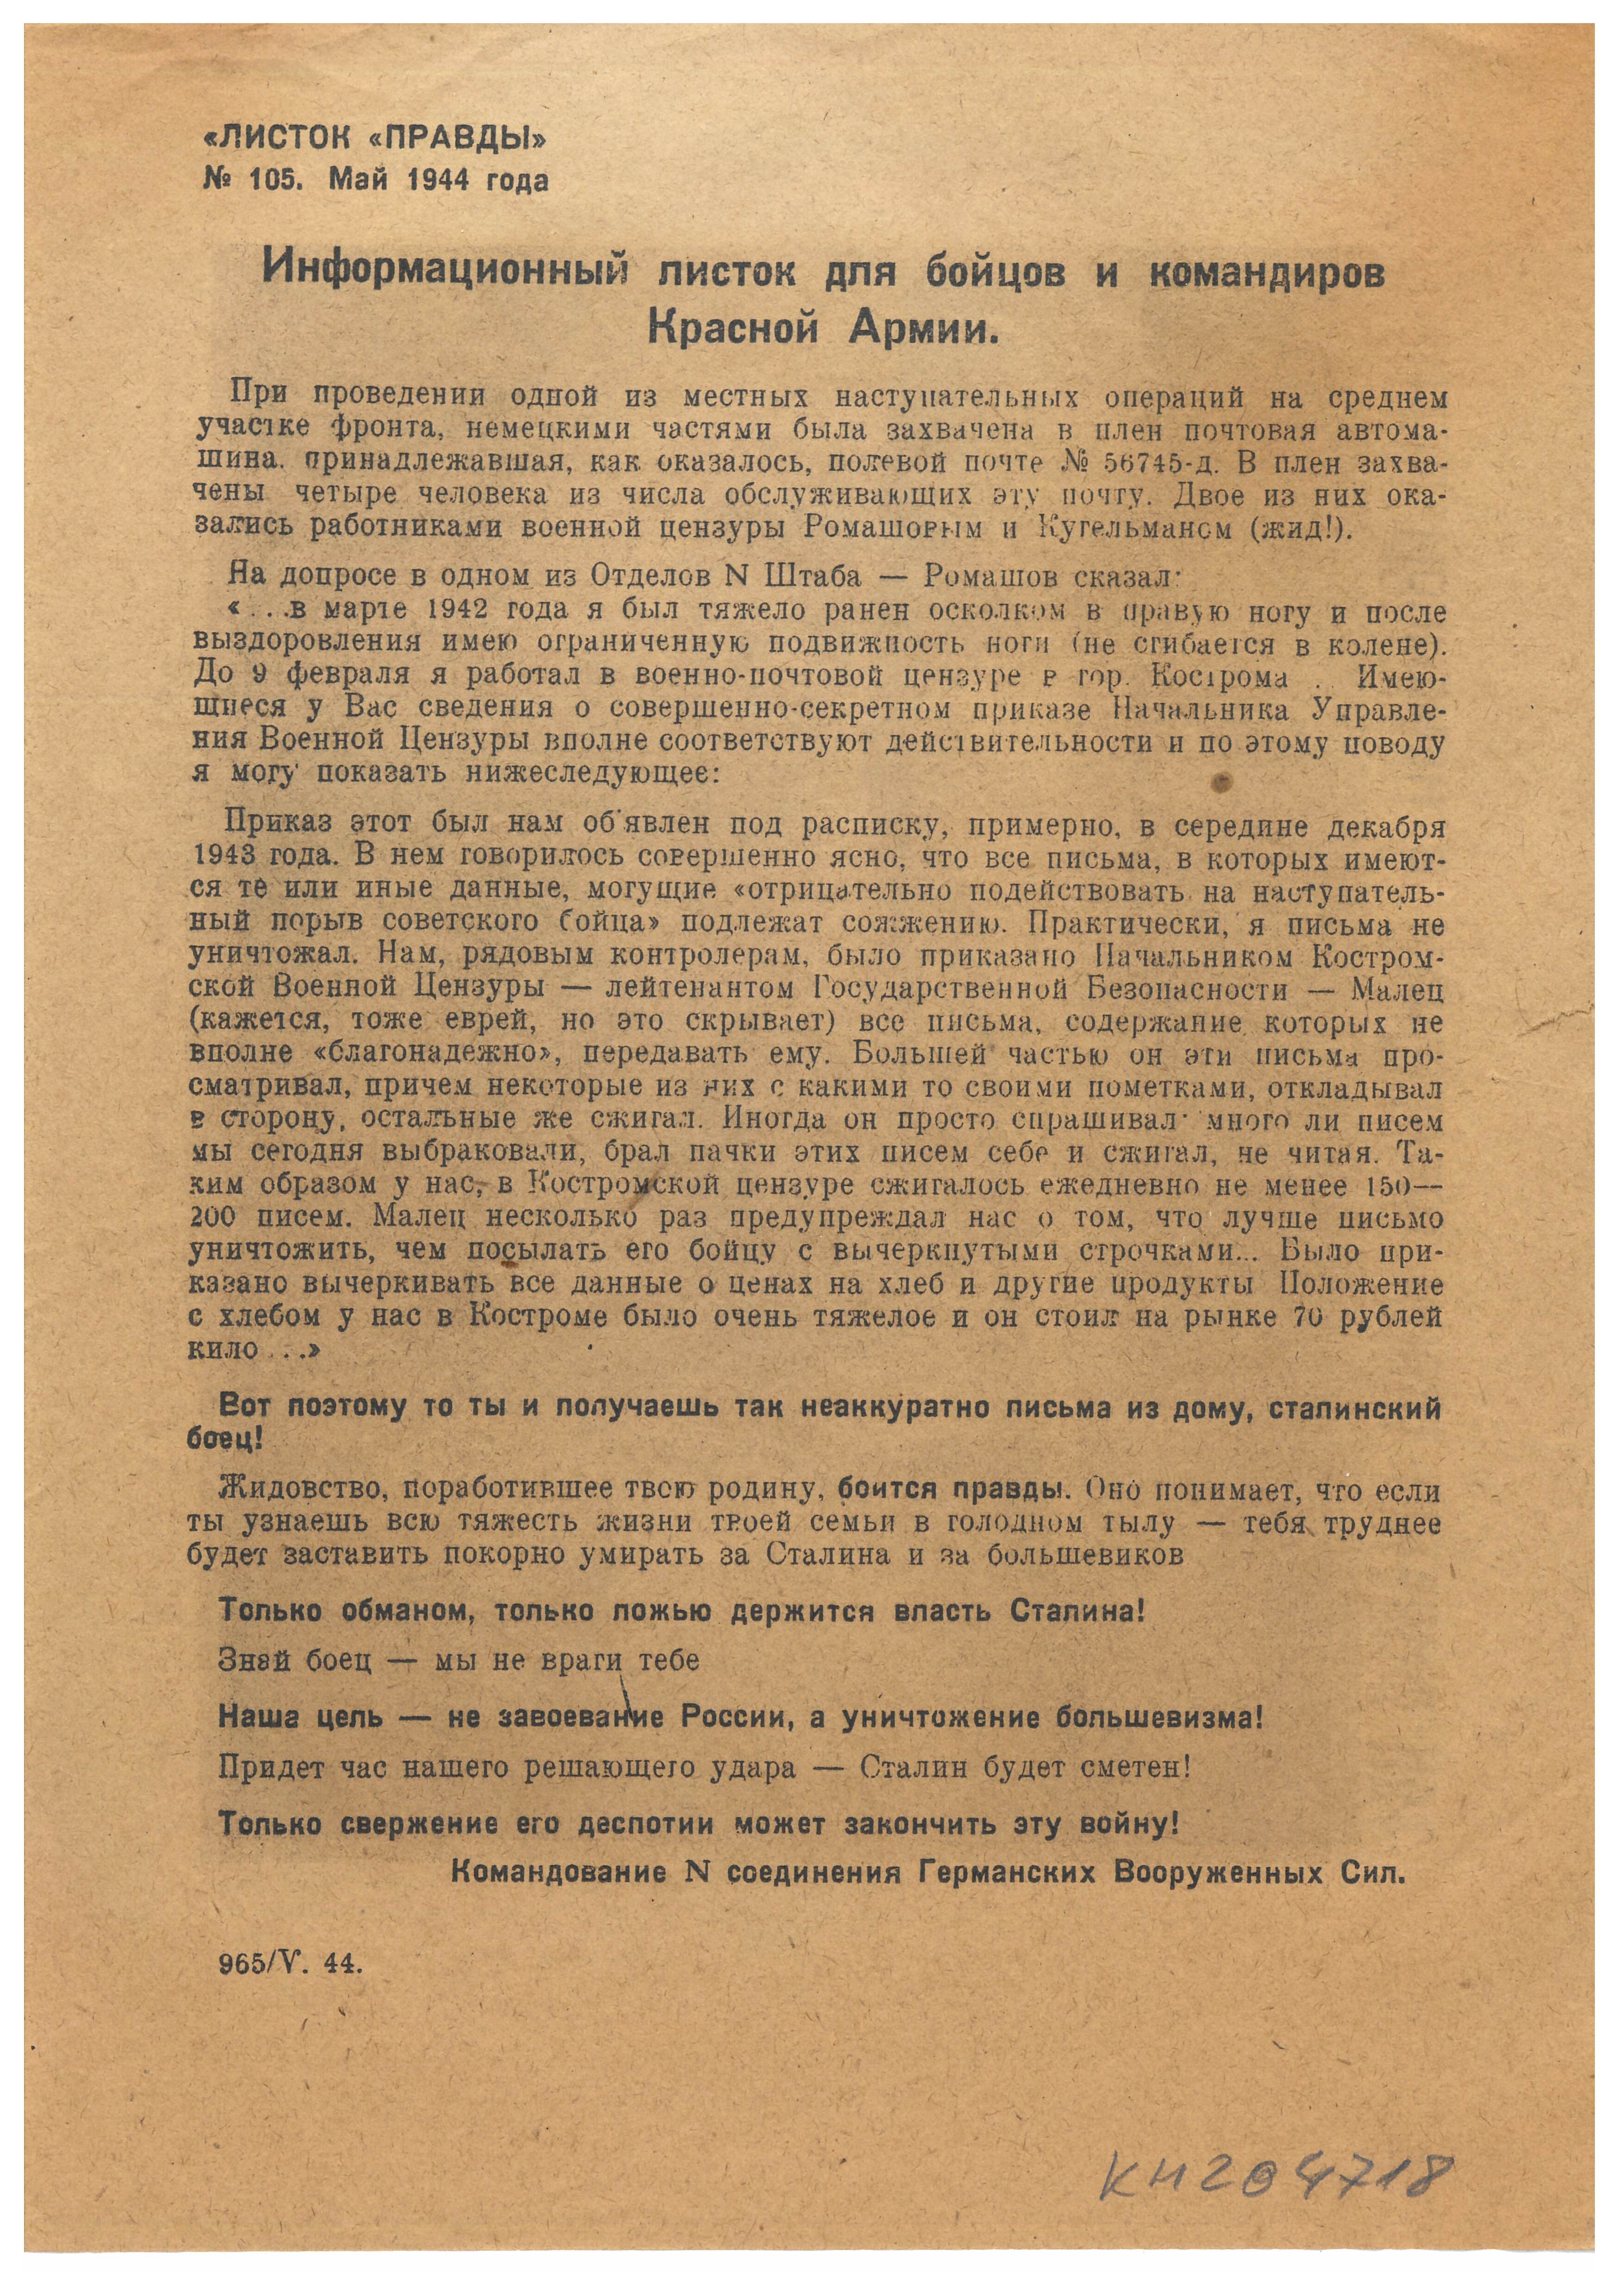 Informationsblatt für die Soldaten und Offiziere der Roten Armee, 1944 (Deutsch-Russisches Museum Berlin-Karlshorst CC BY-NC-SA)